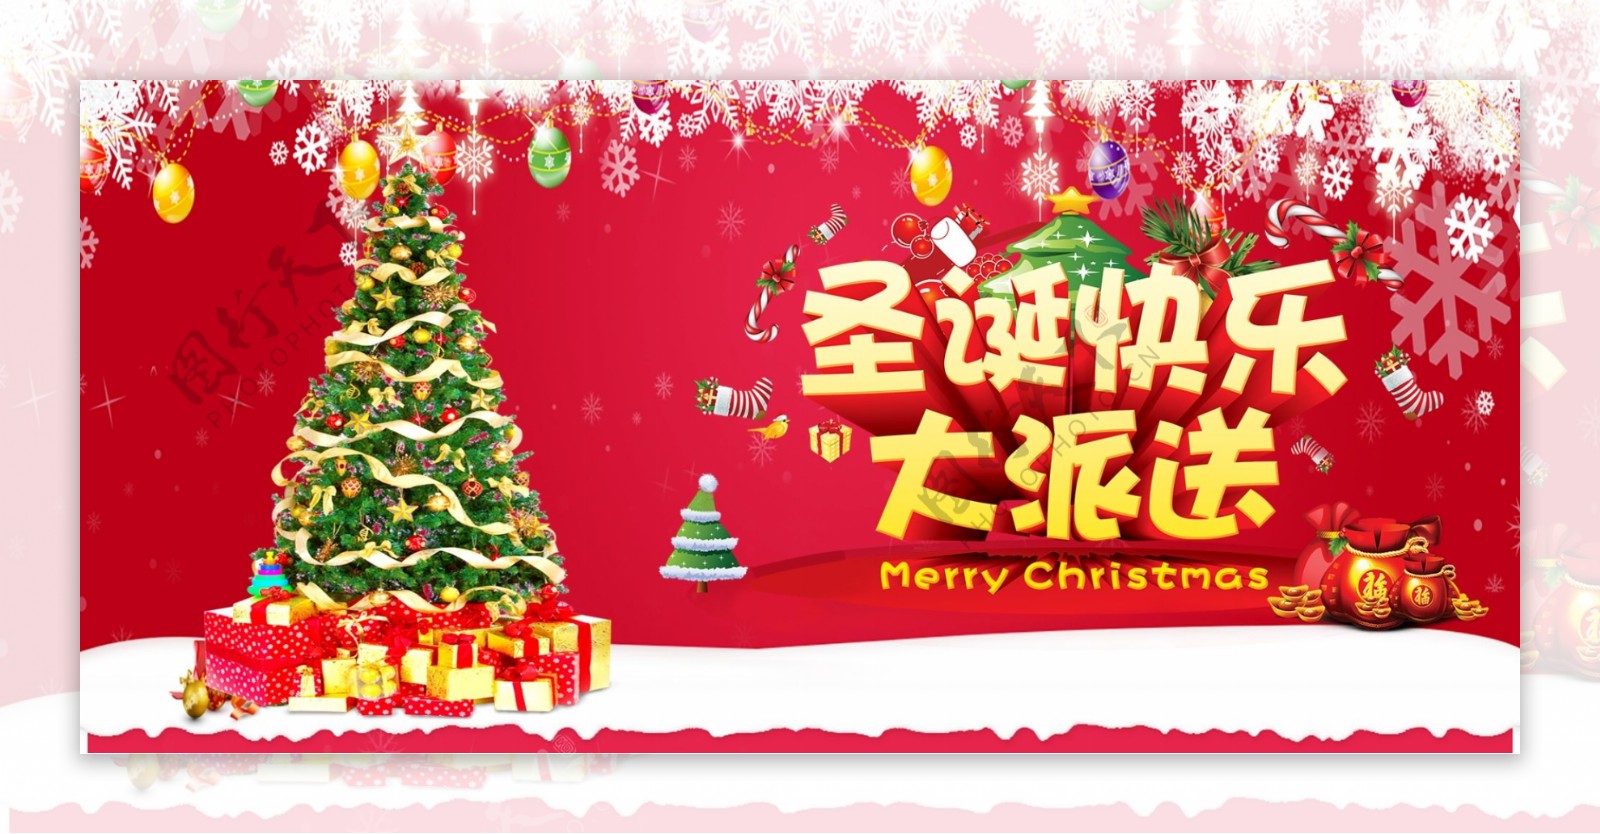 大红色圣诞节礼物banner淘宝背景模板